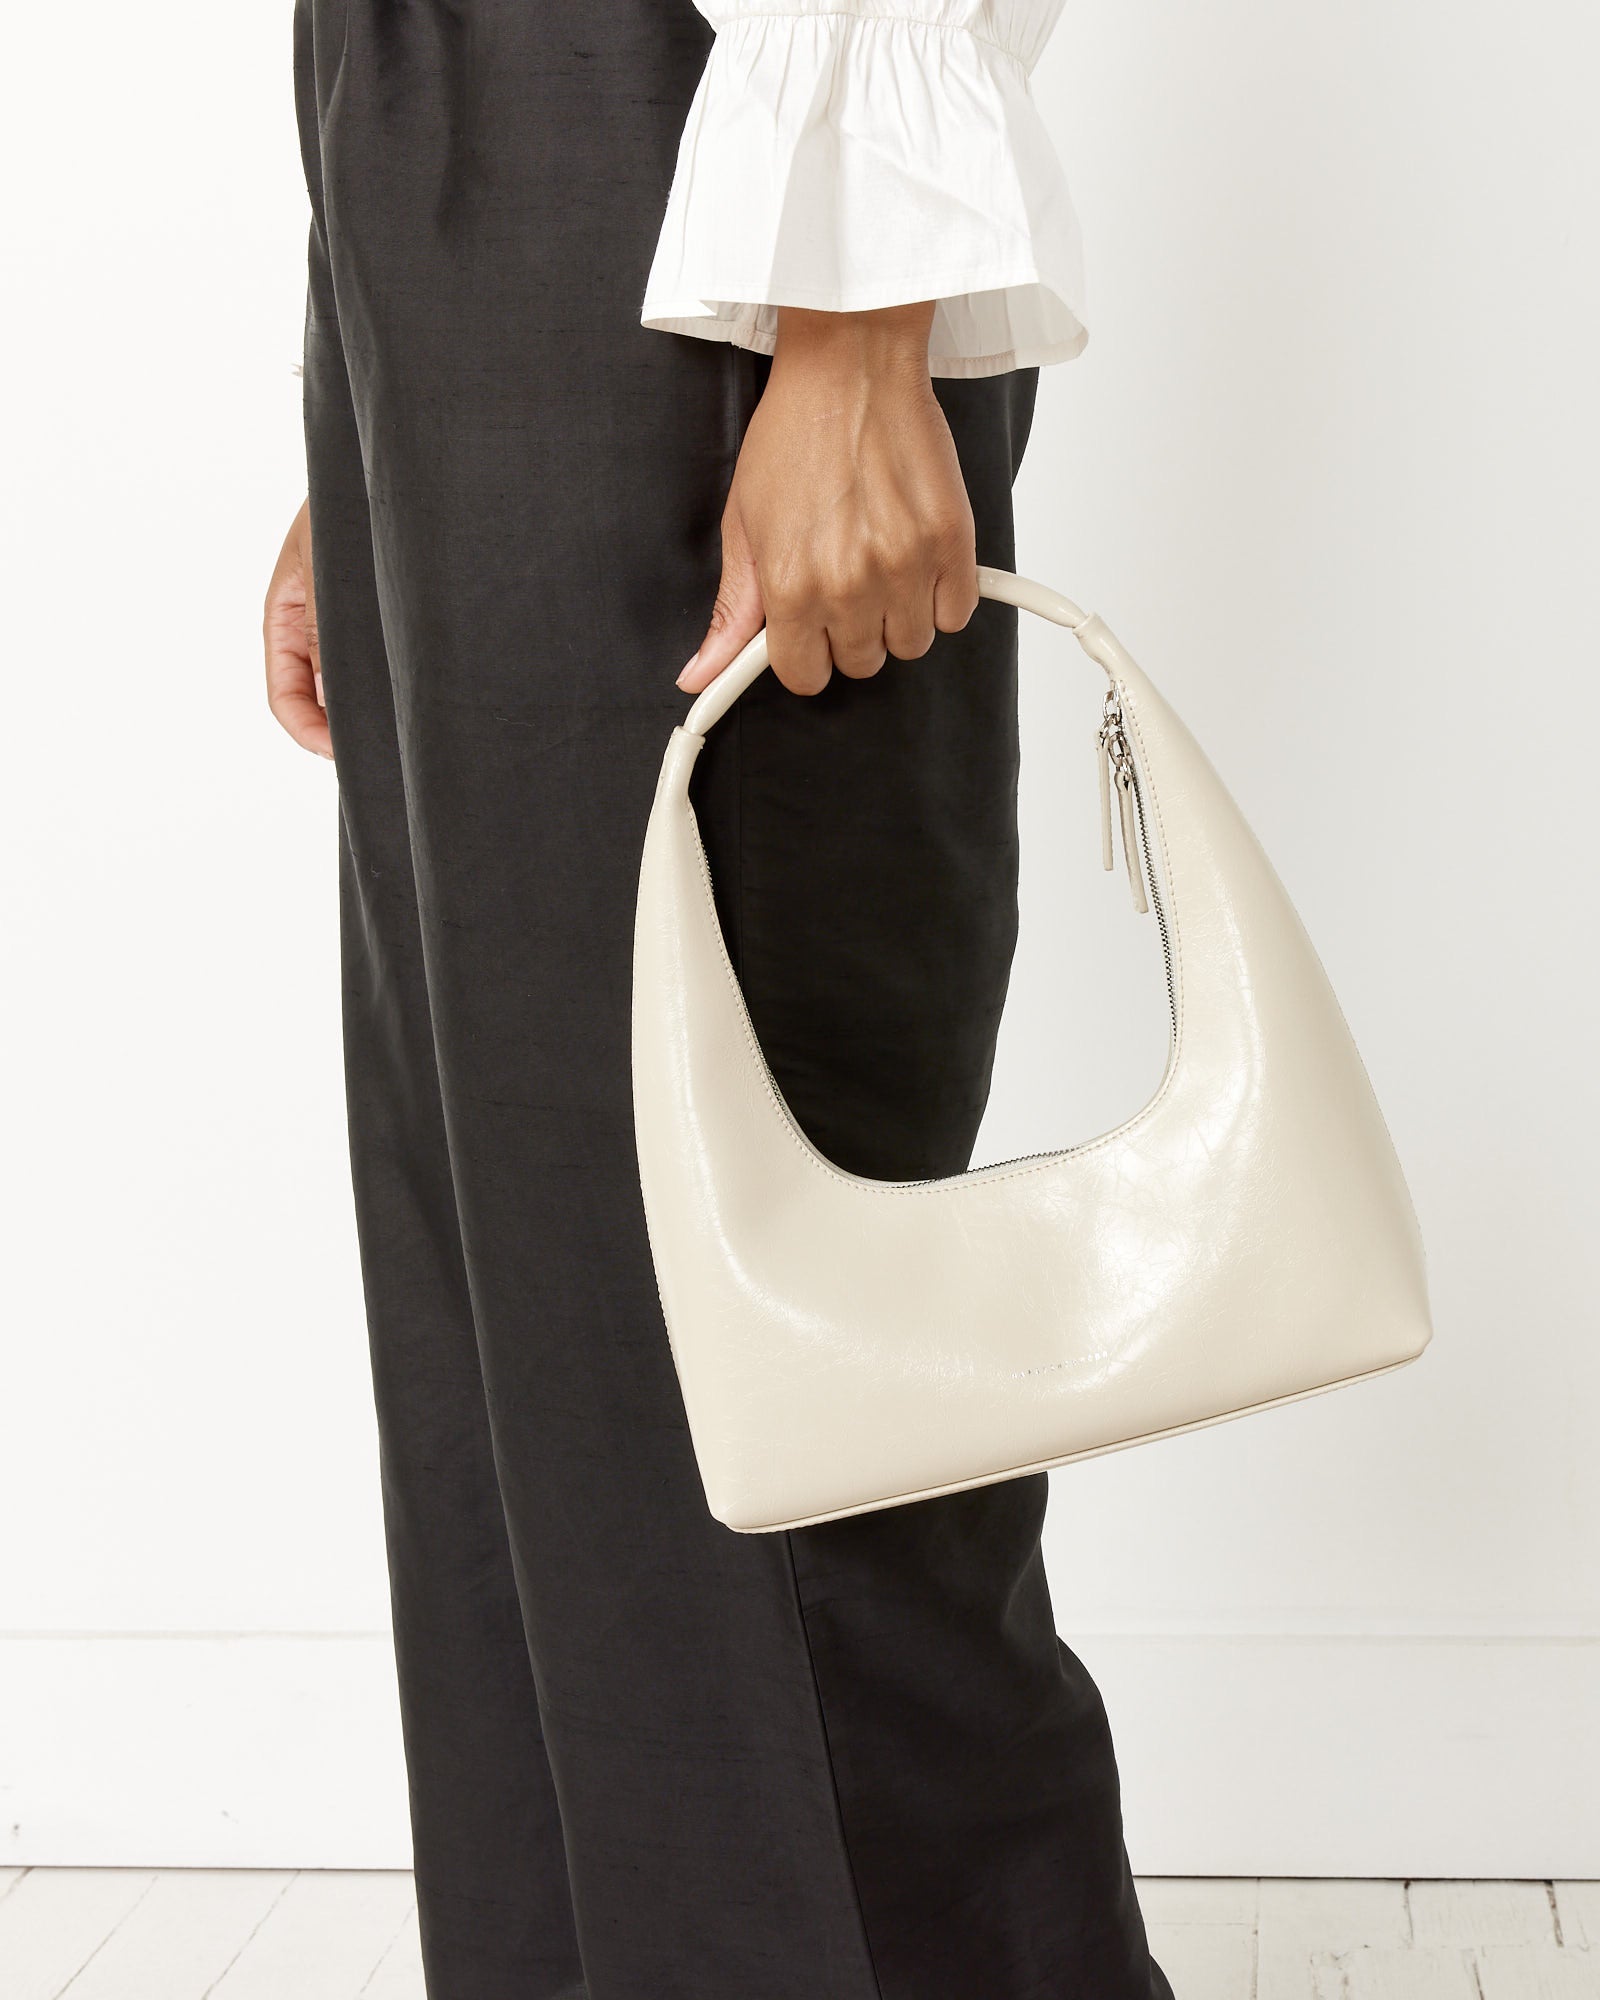 Marge Sherwood Contemporary Shoulder Bag